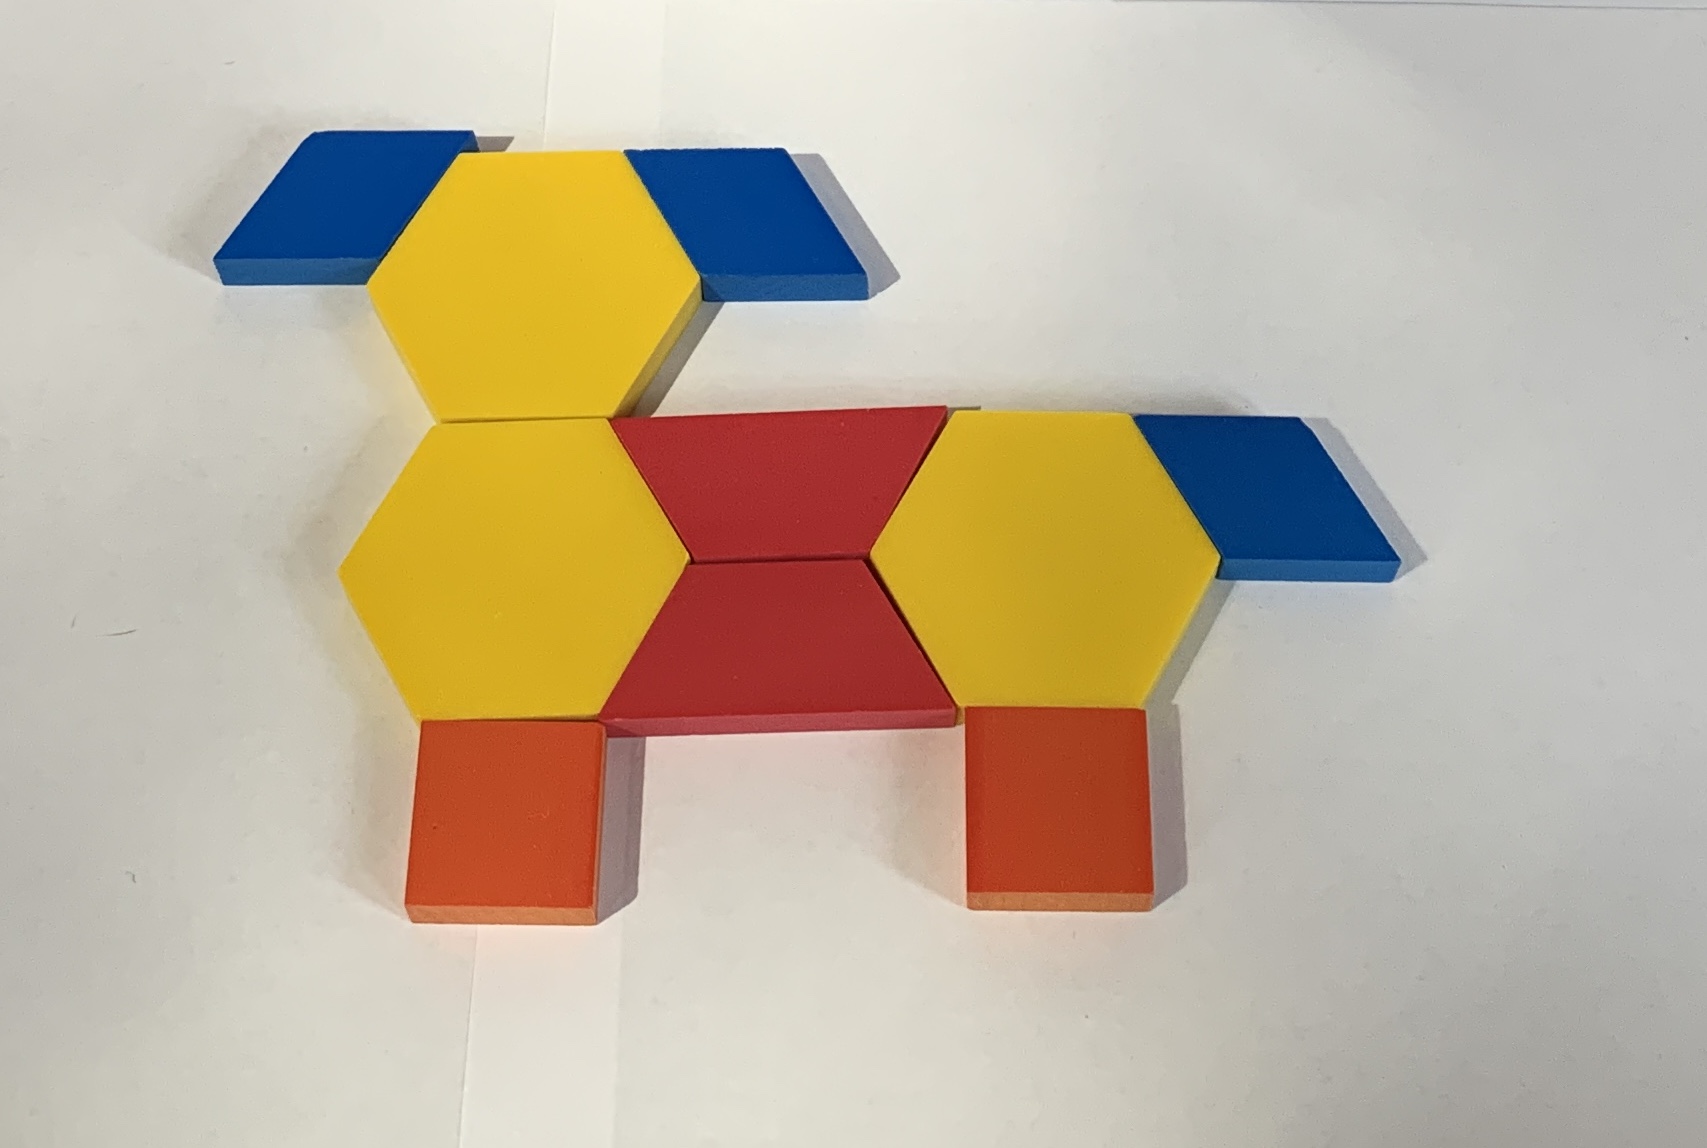 Perro formado por fichas geométricas. 3 fichas amarillas, 2 rojas, 3 azules y 2 anaranjadas.